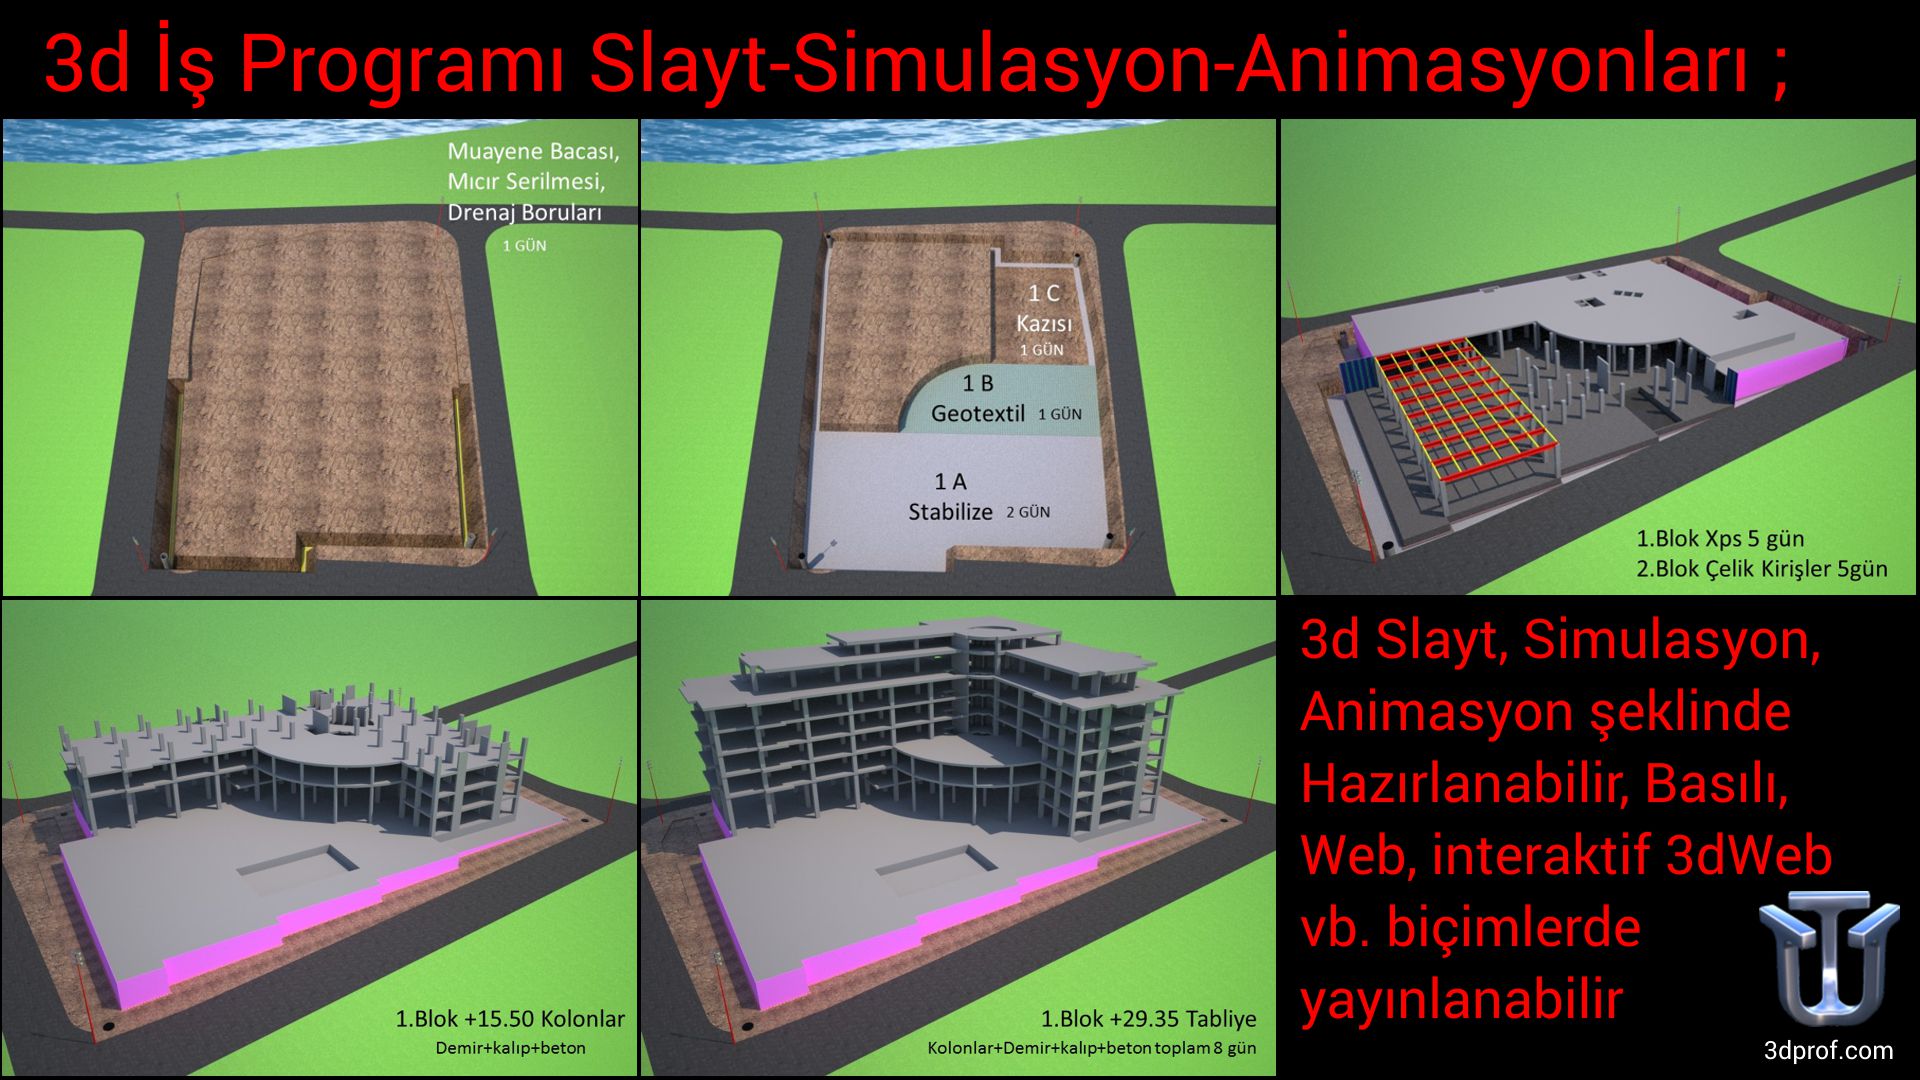 3d İş Programı Slayt-Simulasyon-Animasyonları ; 3d Slayt, Simulasyon, Animasyon şeklinde Hazırlanabilir, Basılı, Web, interaktif 3dWeb vb. biçimlerde yayınlanabilir